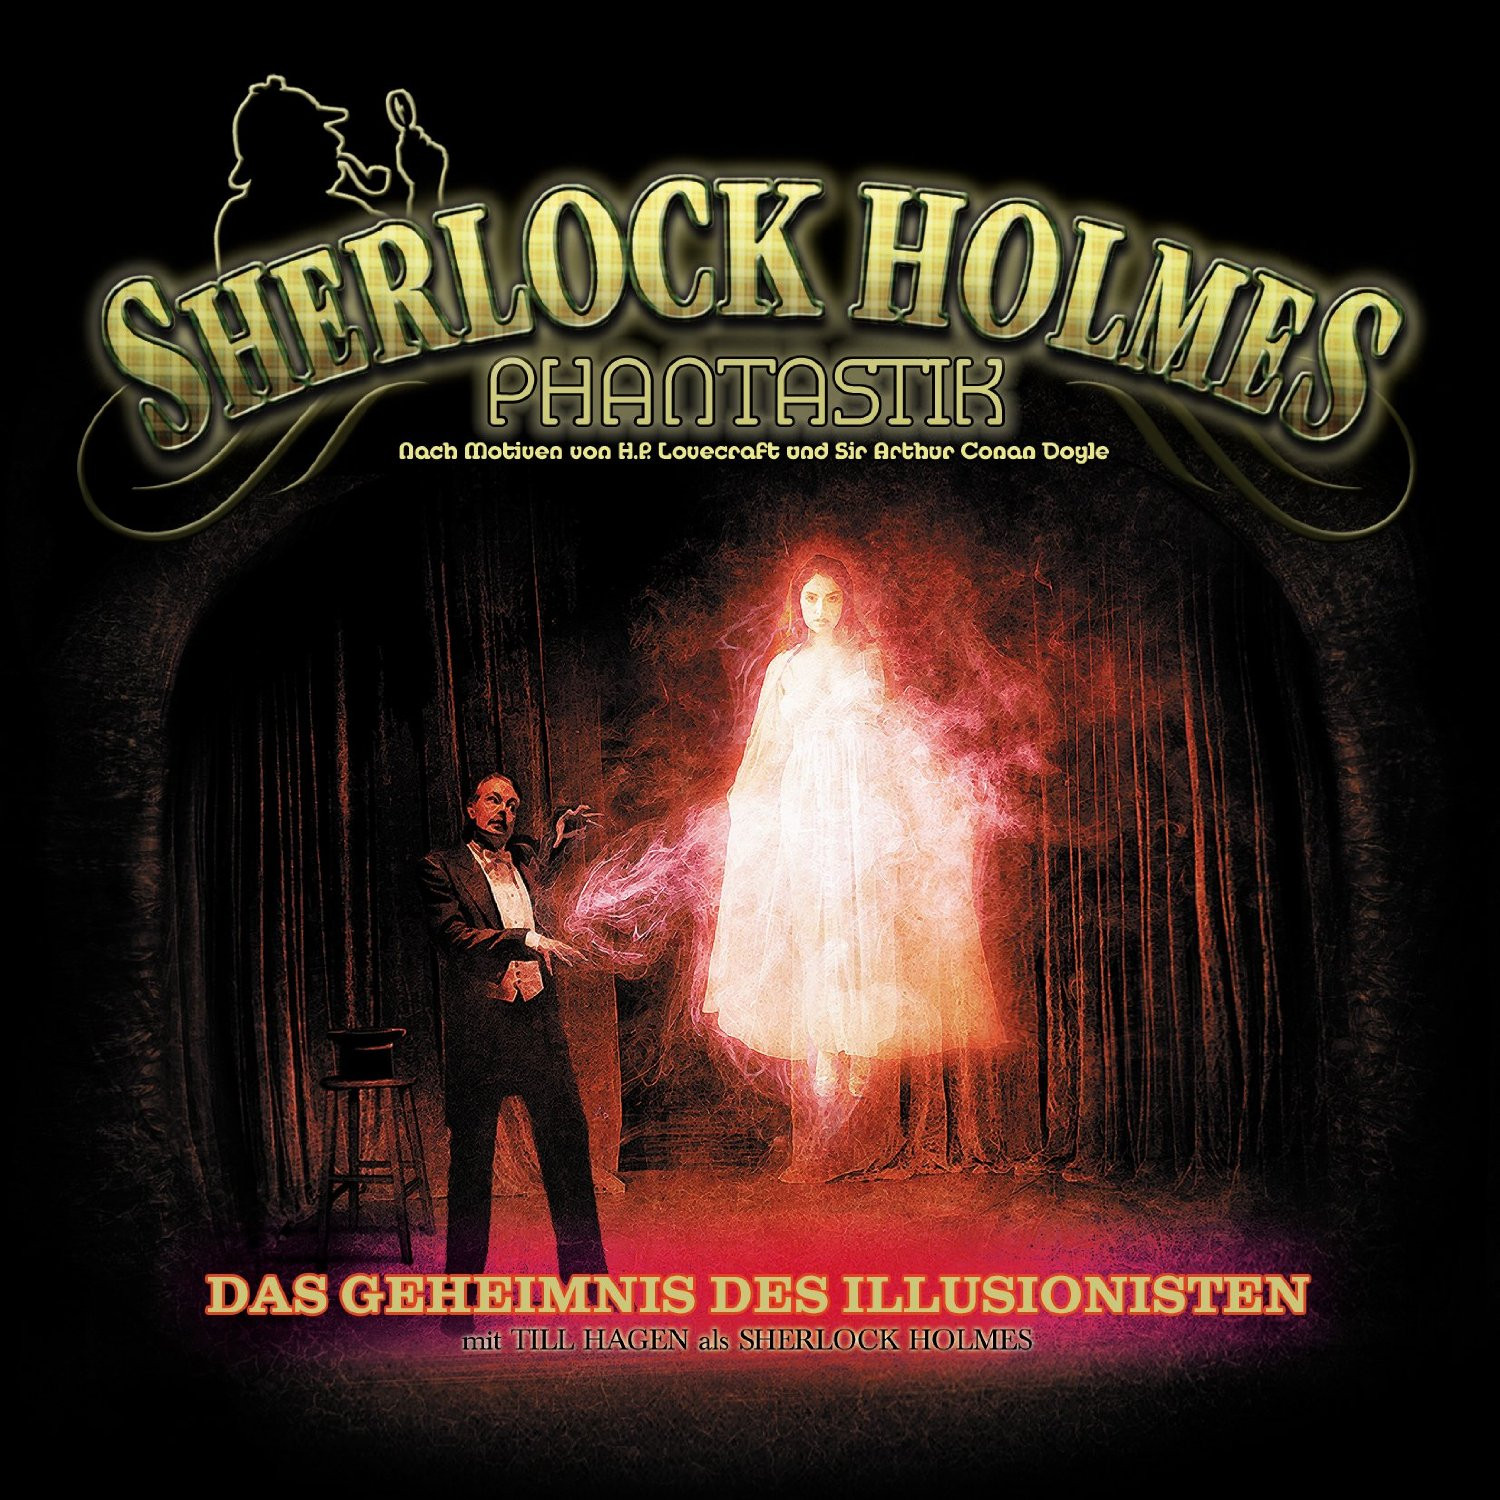 Sherlock Holmes Phantastik 02: Das Geheimnis des Illusionisten